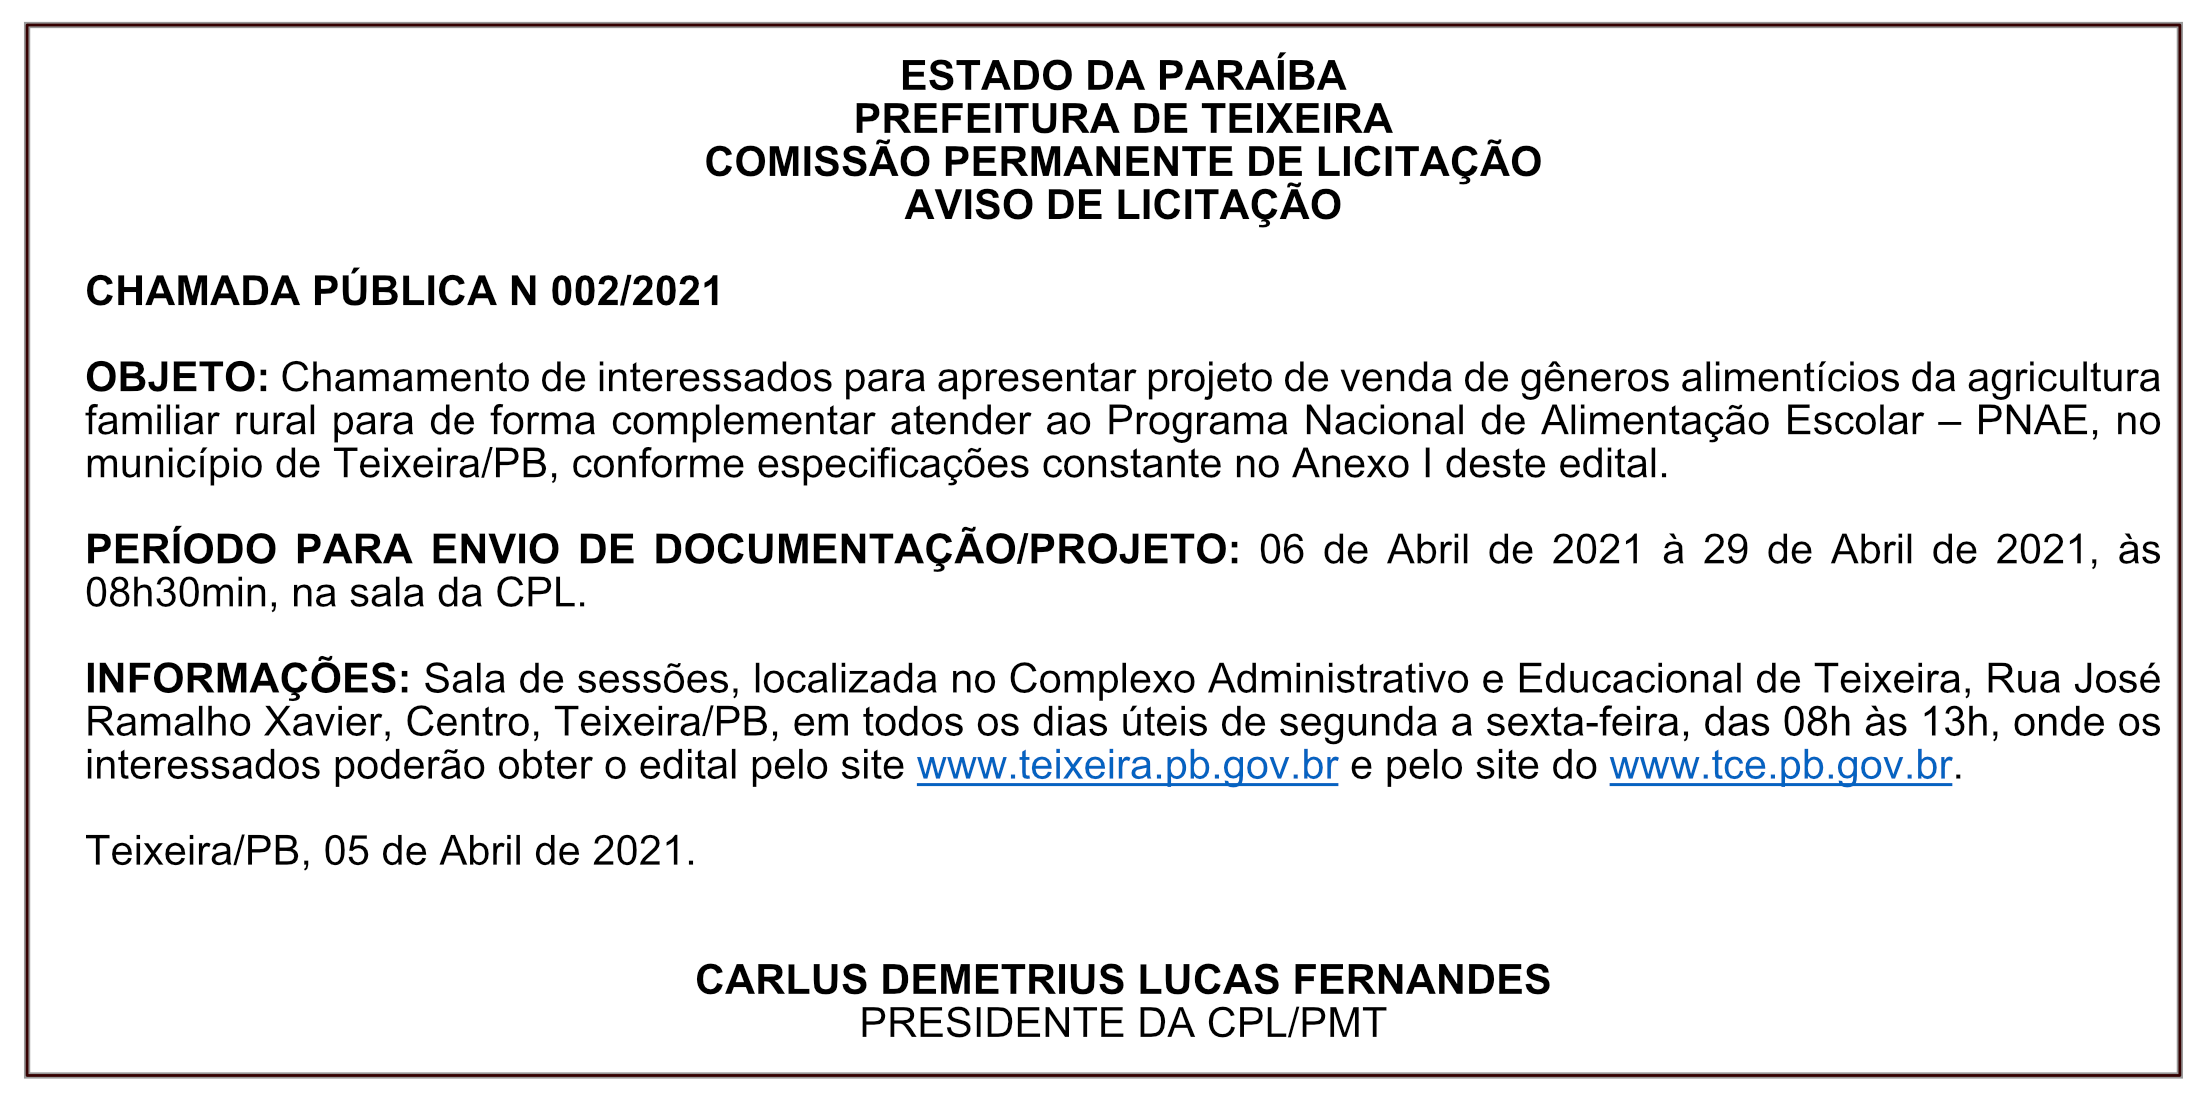 PREFEITURA DE TEIXEIRA – COMISSÃO PERMANENTE DE LICITAÇÃO – AVISO DE LICITAÇÃO – CHAMADA PÚBLICA N 002/2021